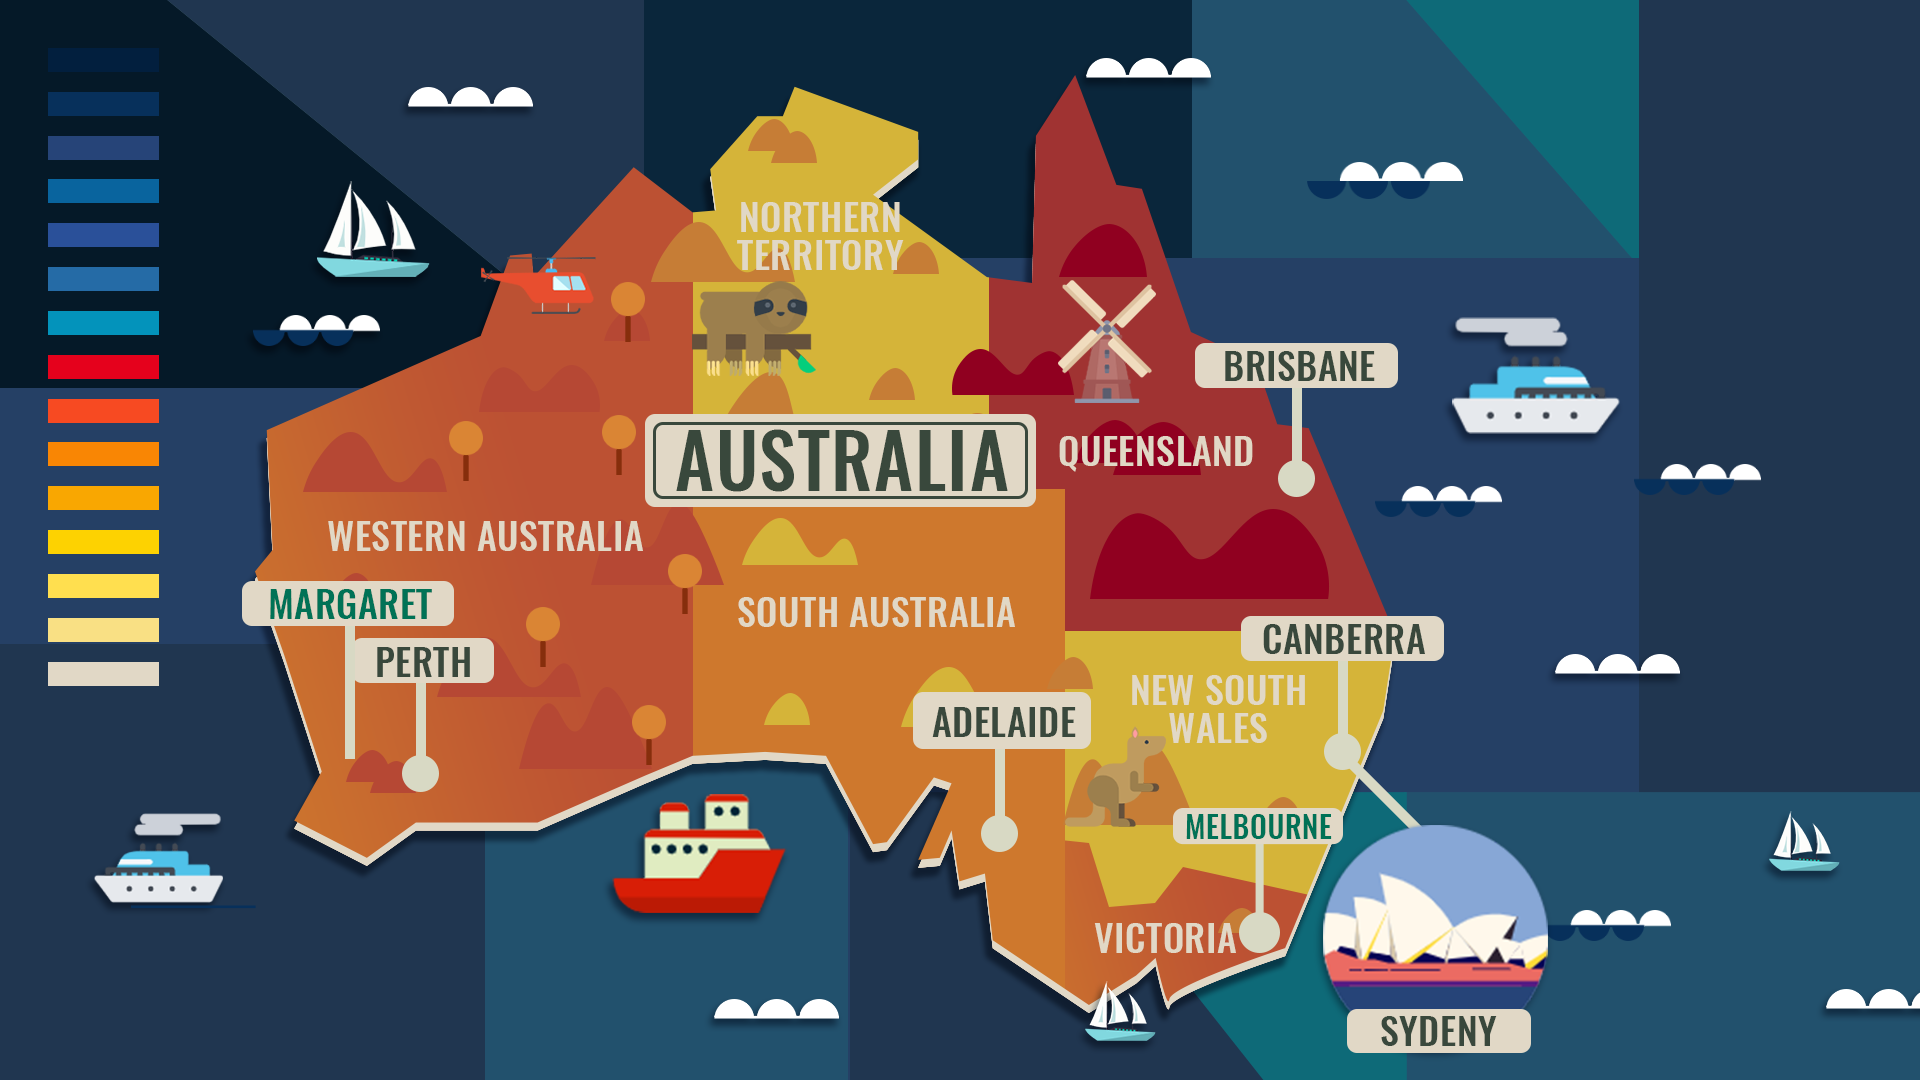 澳大利亚地图 - 澳大利亚地图高清版 - 澳大利亚地图中文版